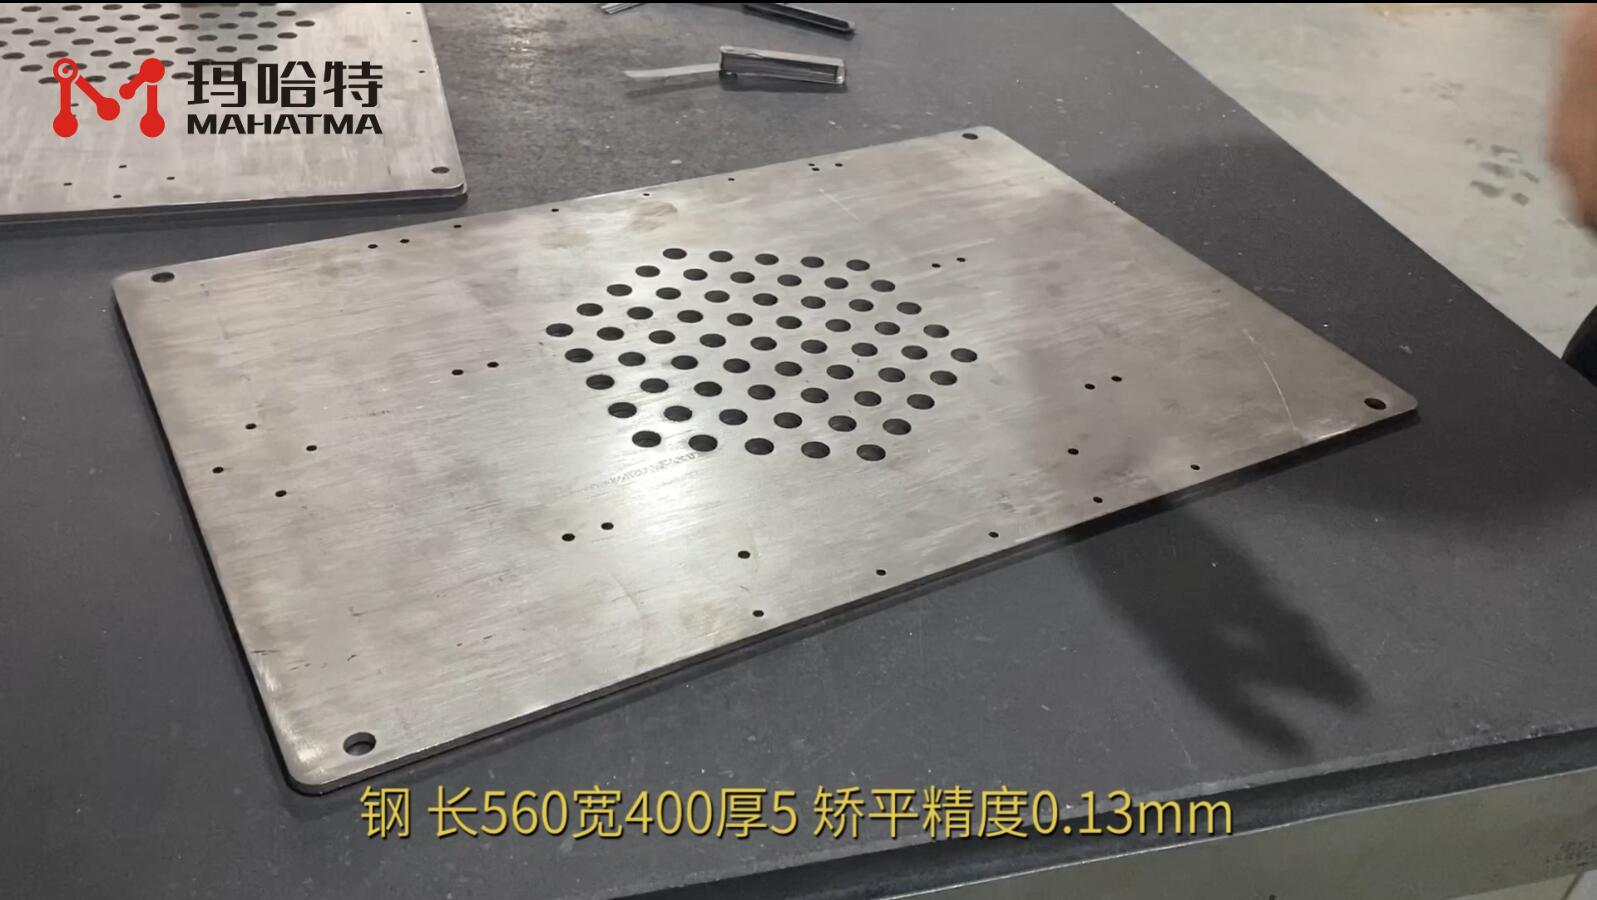 钢 MHT120-1300 长方形 长560宽400厚5 矫平精度0.13mm